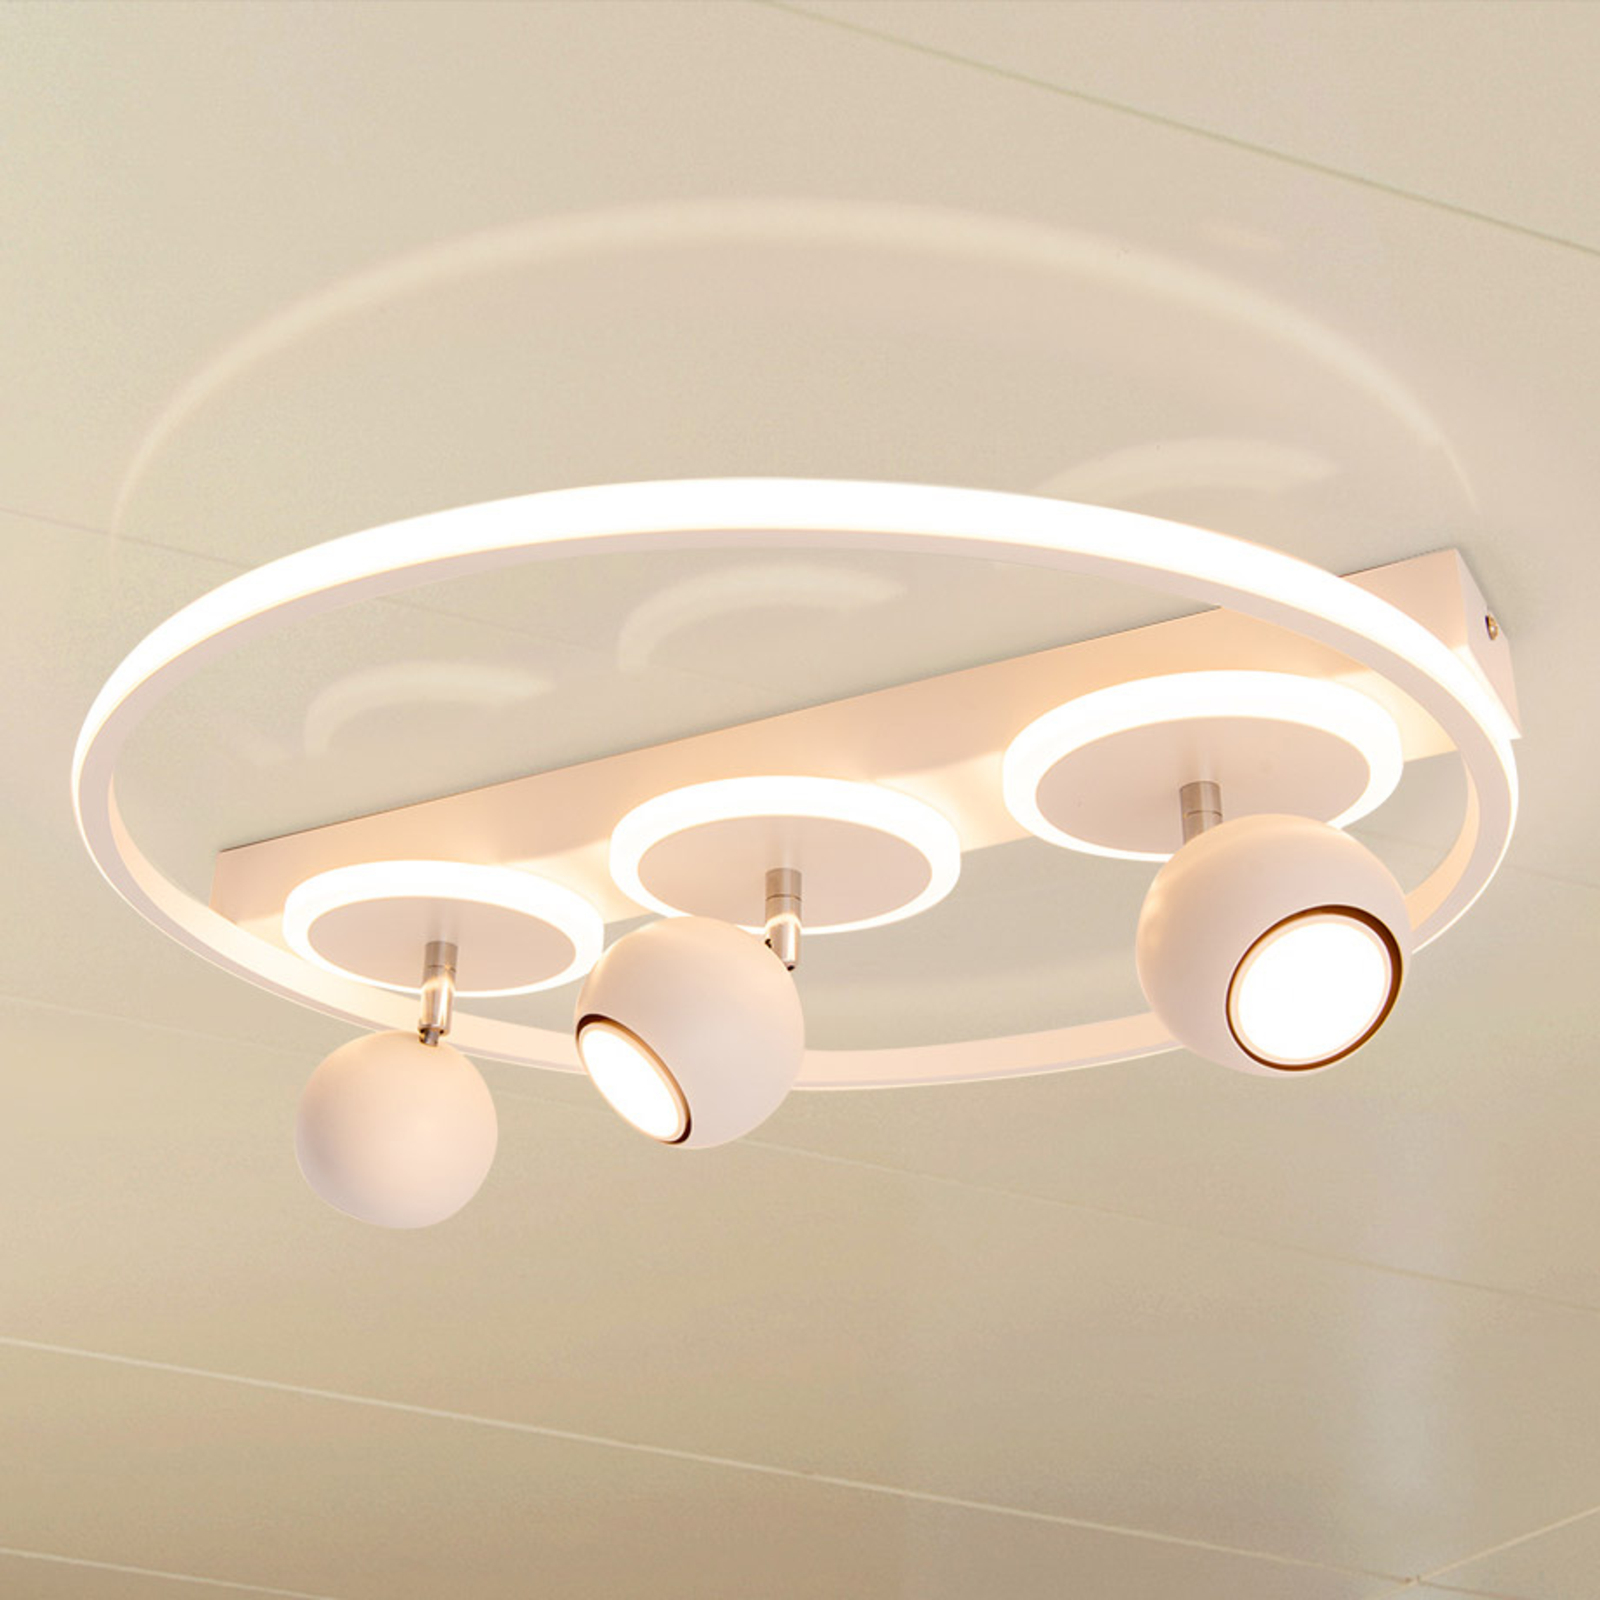 LED-kattovalaisin Ronda, valkoinen, 3-lamppuinen